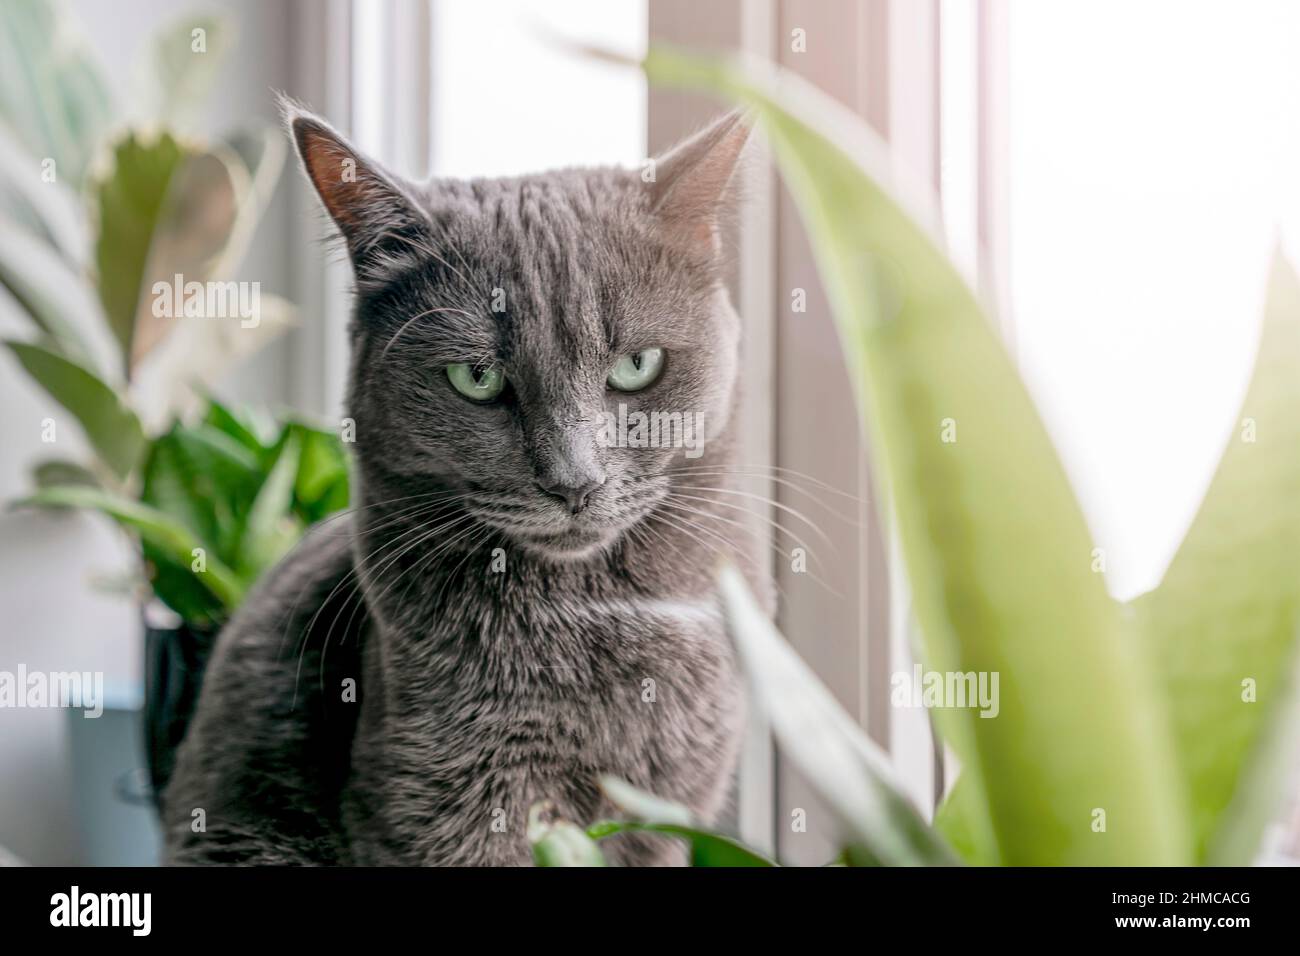 Un joli chat domestique gris repose sur un rebord de fenêtre entouré de plantes vertes. Un animal de compagnie doux donne sur la fenêtre à la lumière du jour. Concept vétérinaire. Banque D'Images